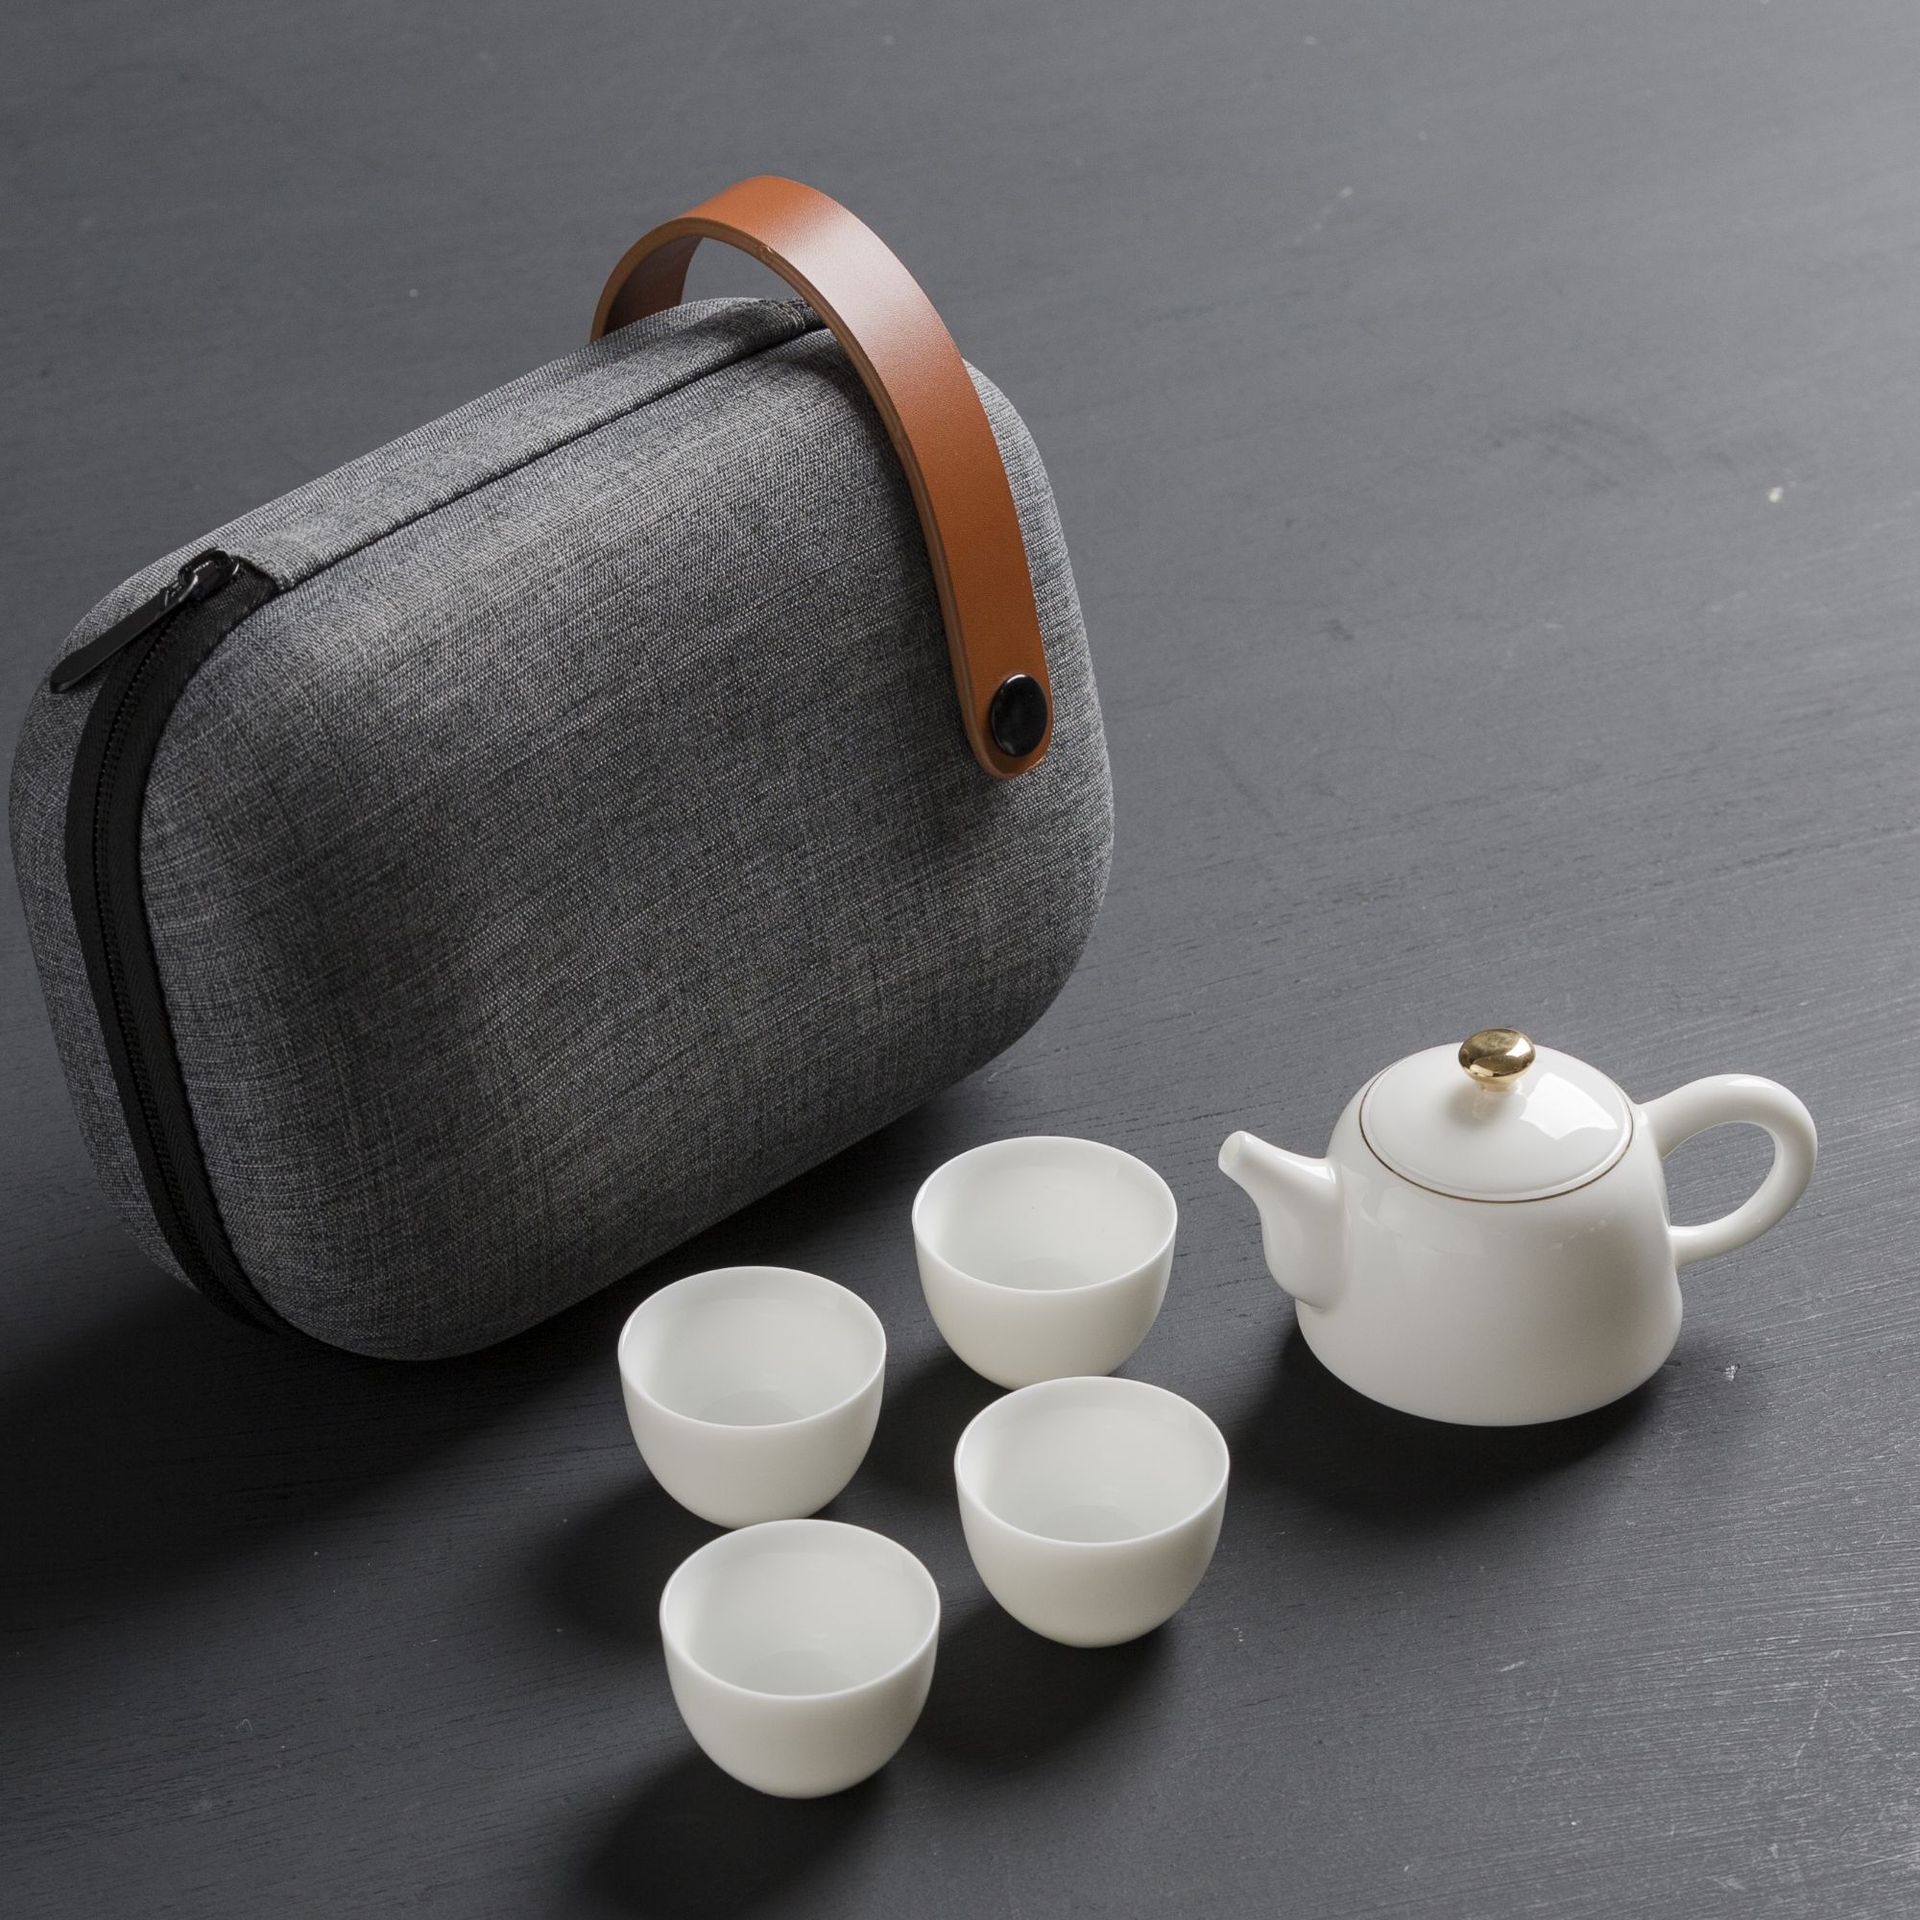 欧式骨瓷咖啡具套装下午茶具英式高档陶瓷咖啡杯套装礼品礼盒装-阿里巴巴